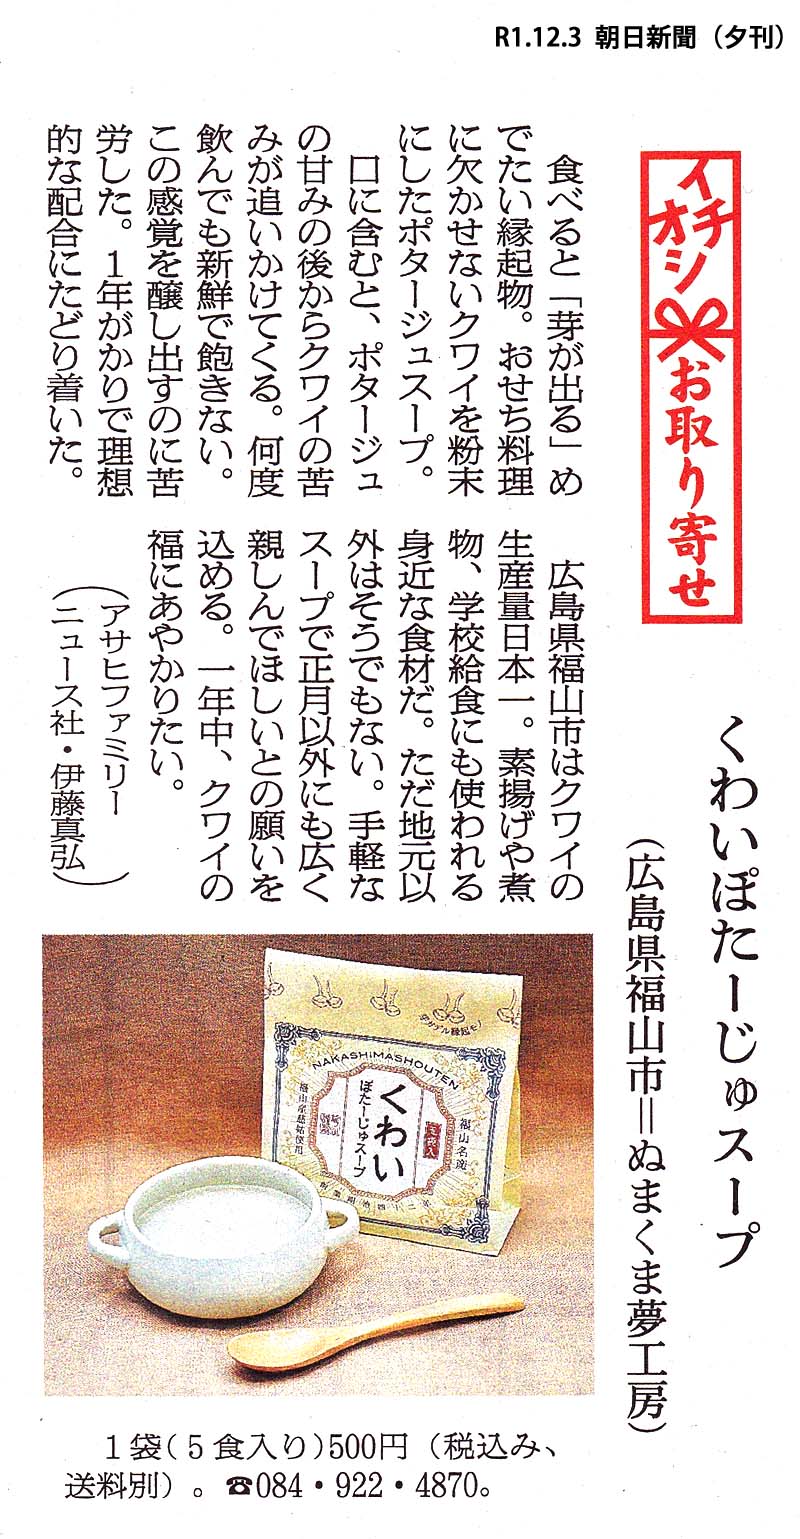 くわいぽたーじゅスープ 191203 朝日新聞